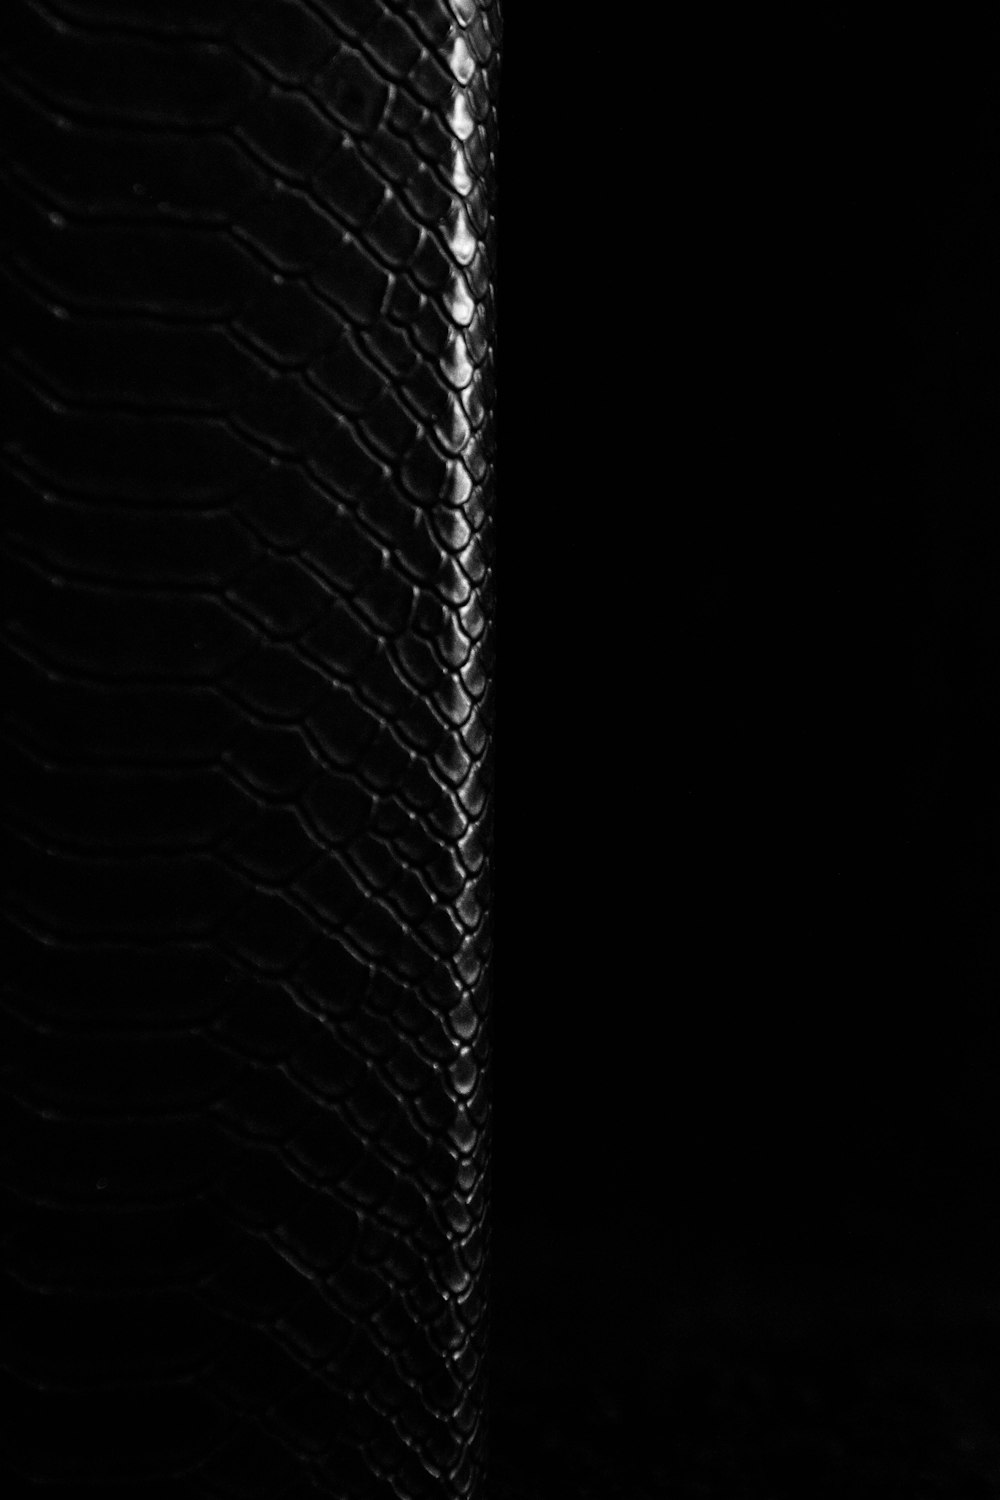 Schwarz-Weiß-Foto des Netzes